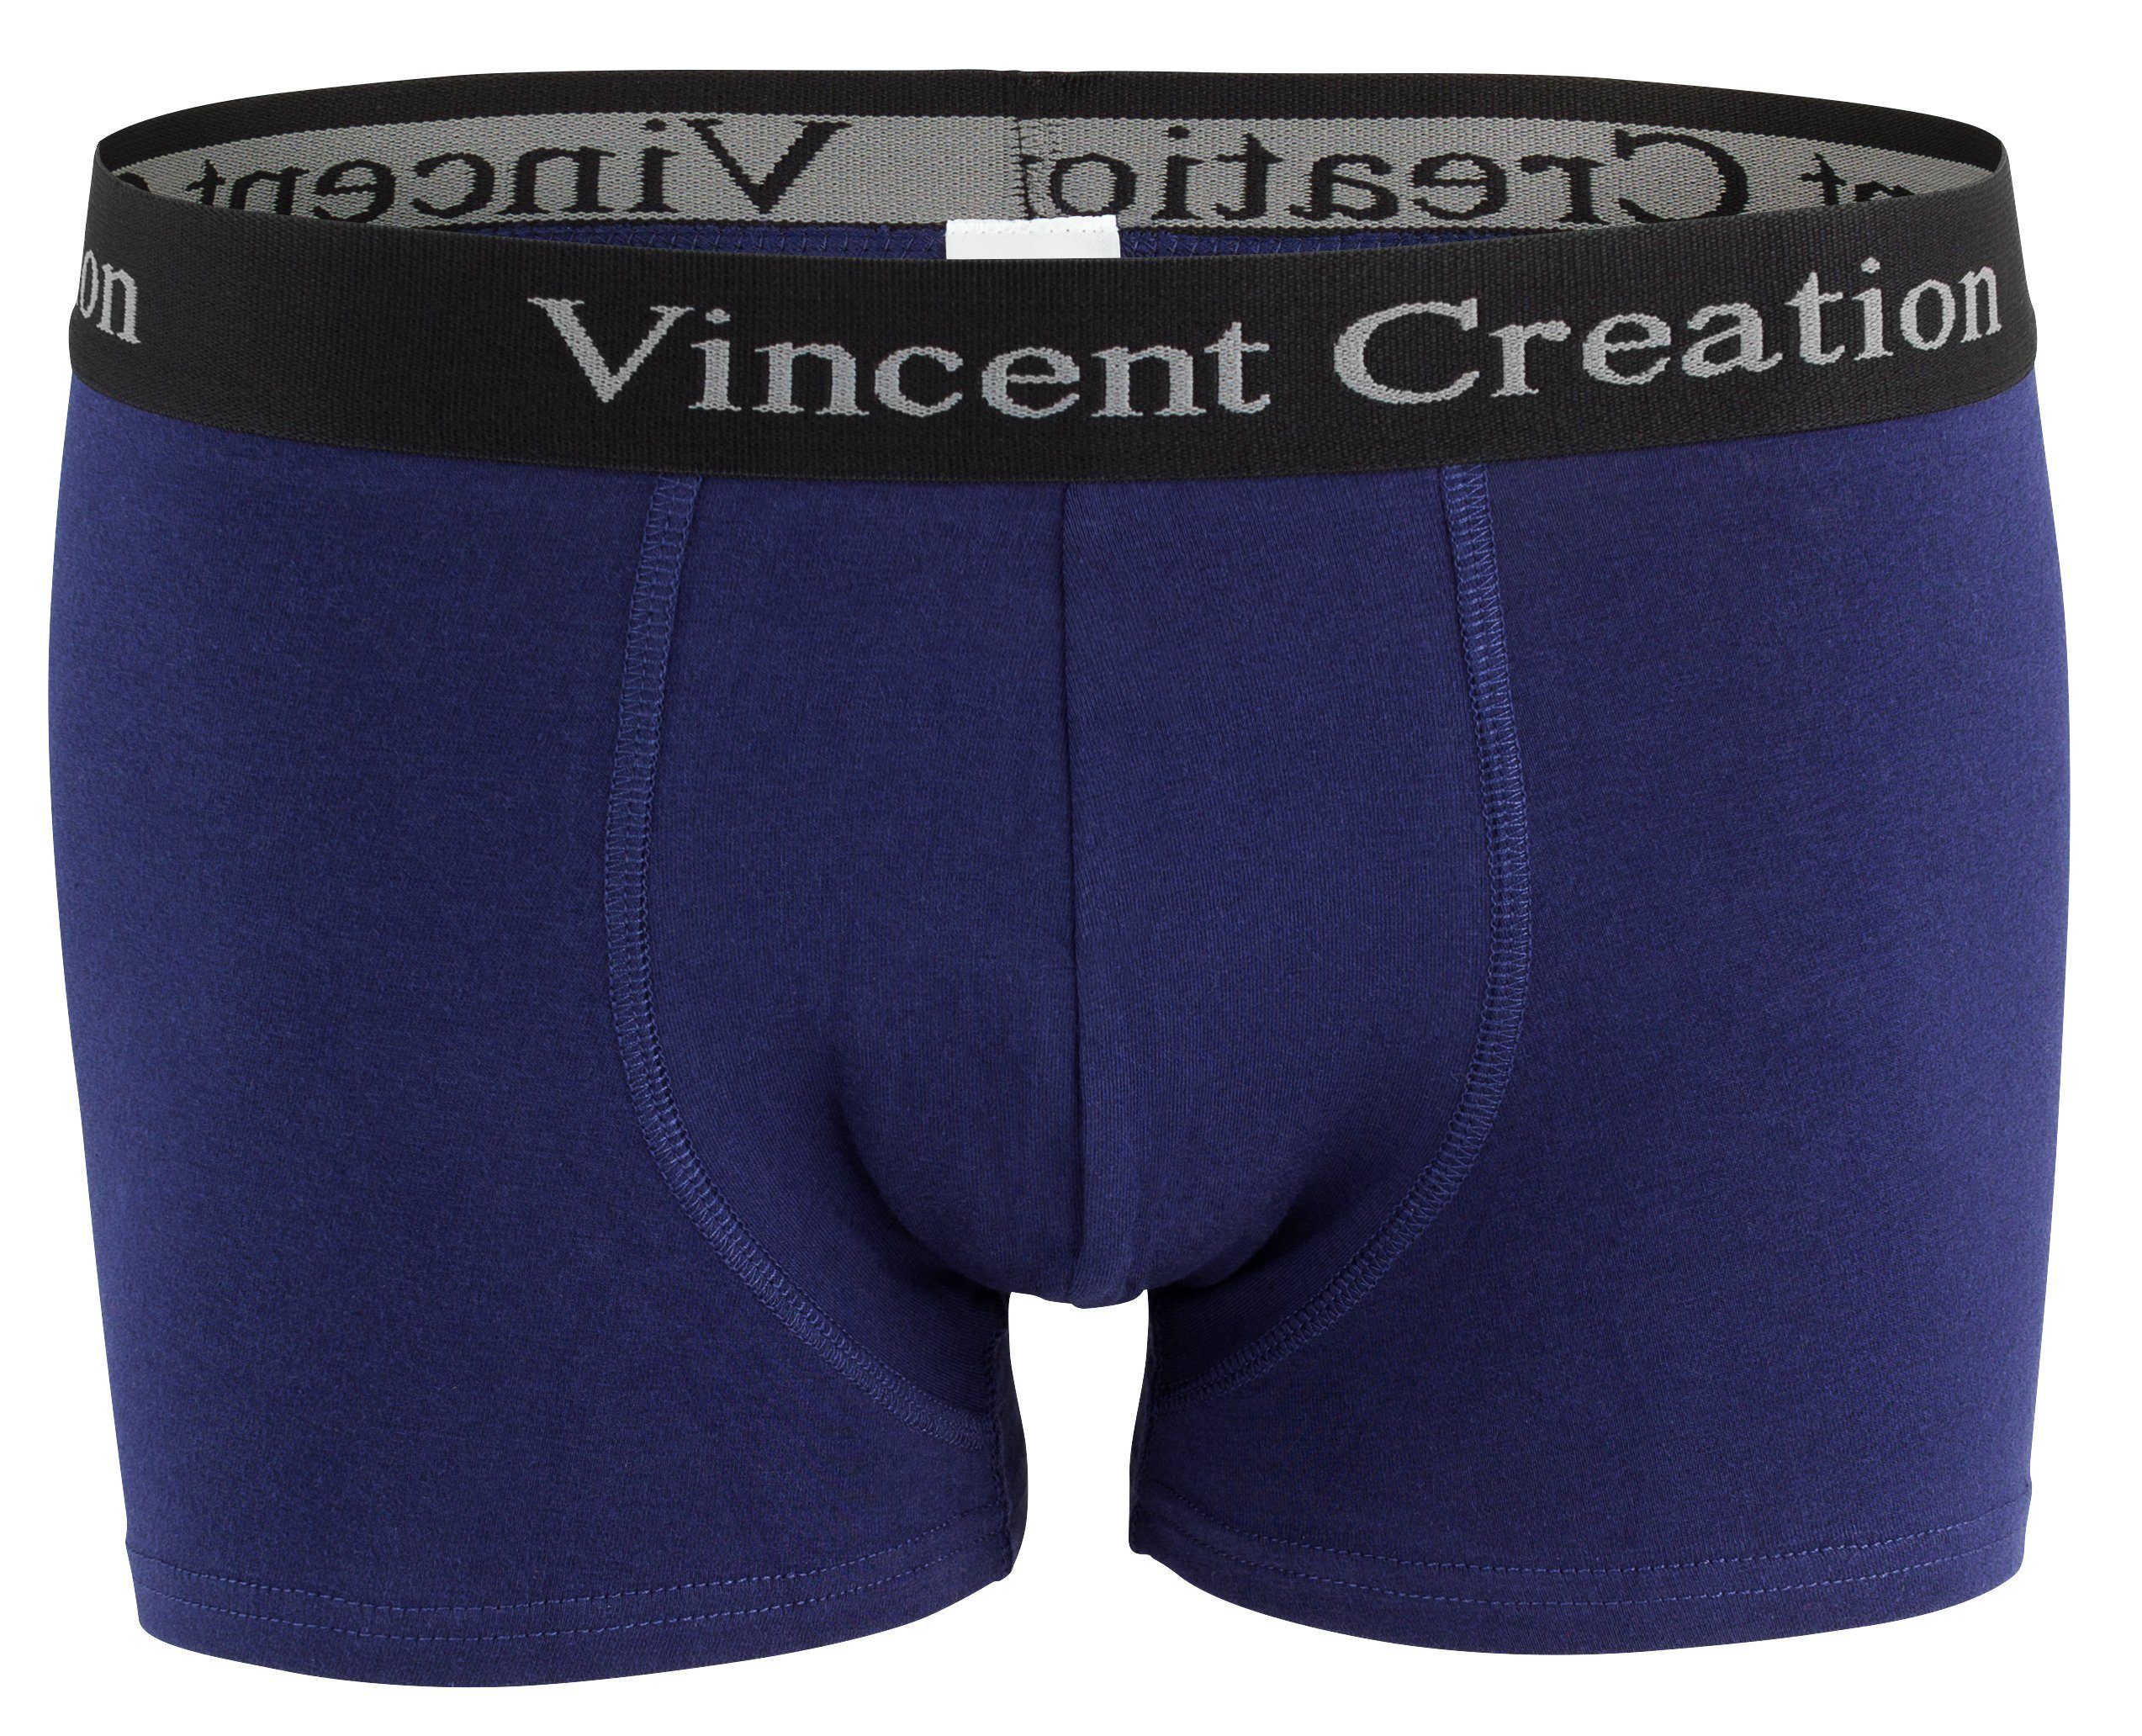 Wäsche/Bademode Boxershorts Vincent Creation® Boxershorts (12 Stück) angenehm stretchiger Baumwollmix